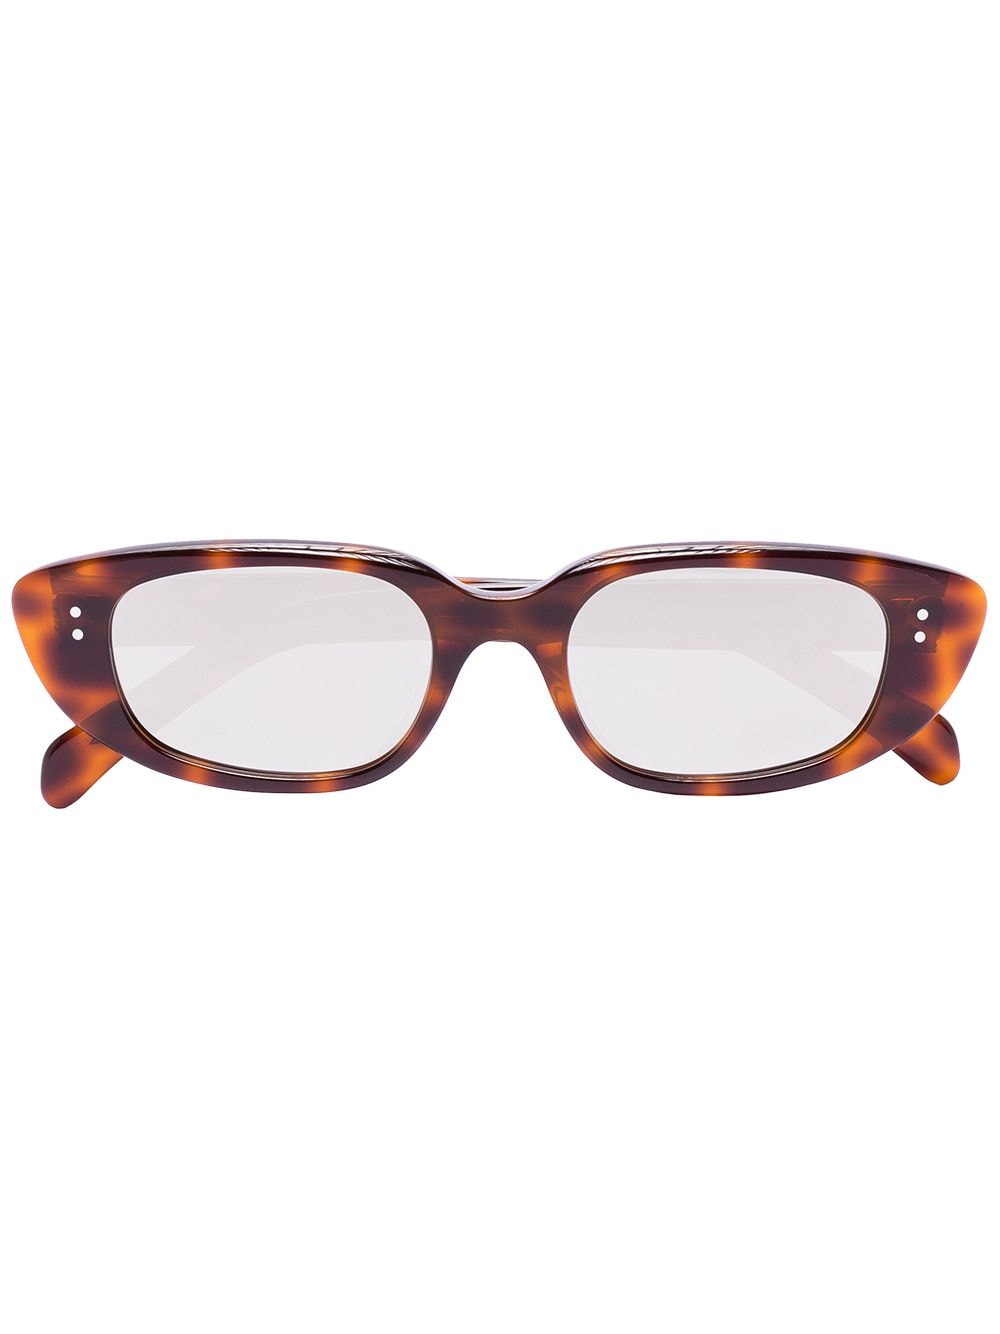 фото Celine eyewear солнцезащитные очки в оправе 'кошачий глаз' черепаховой расцветки